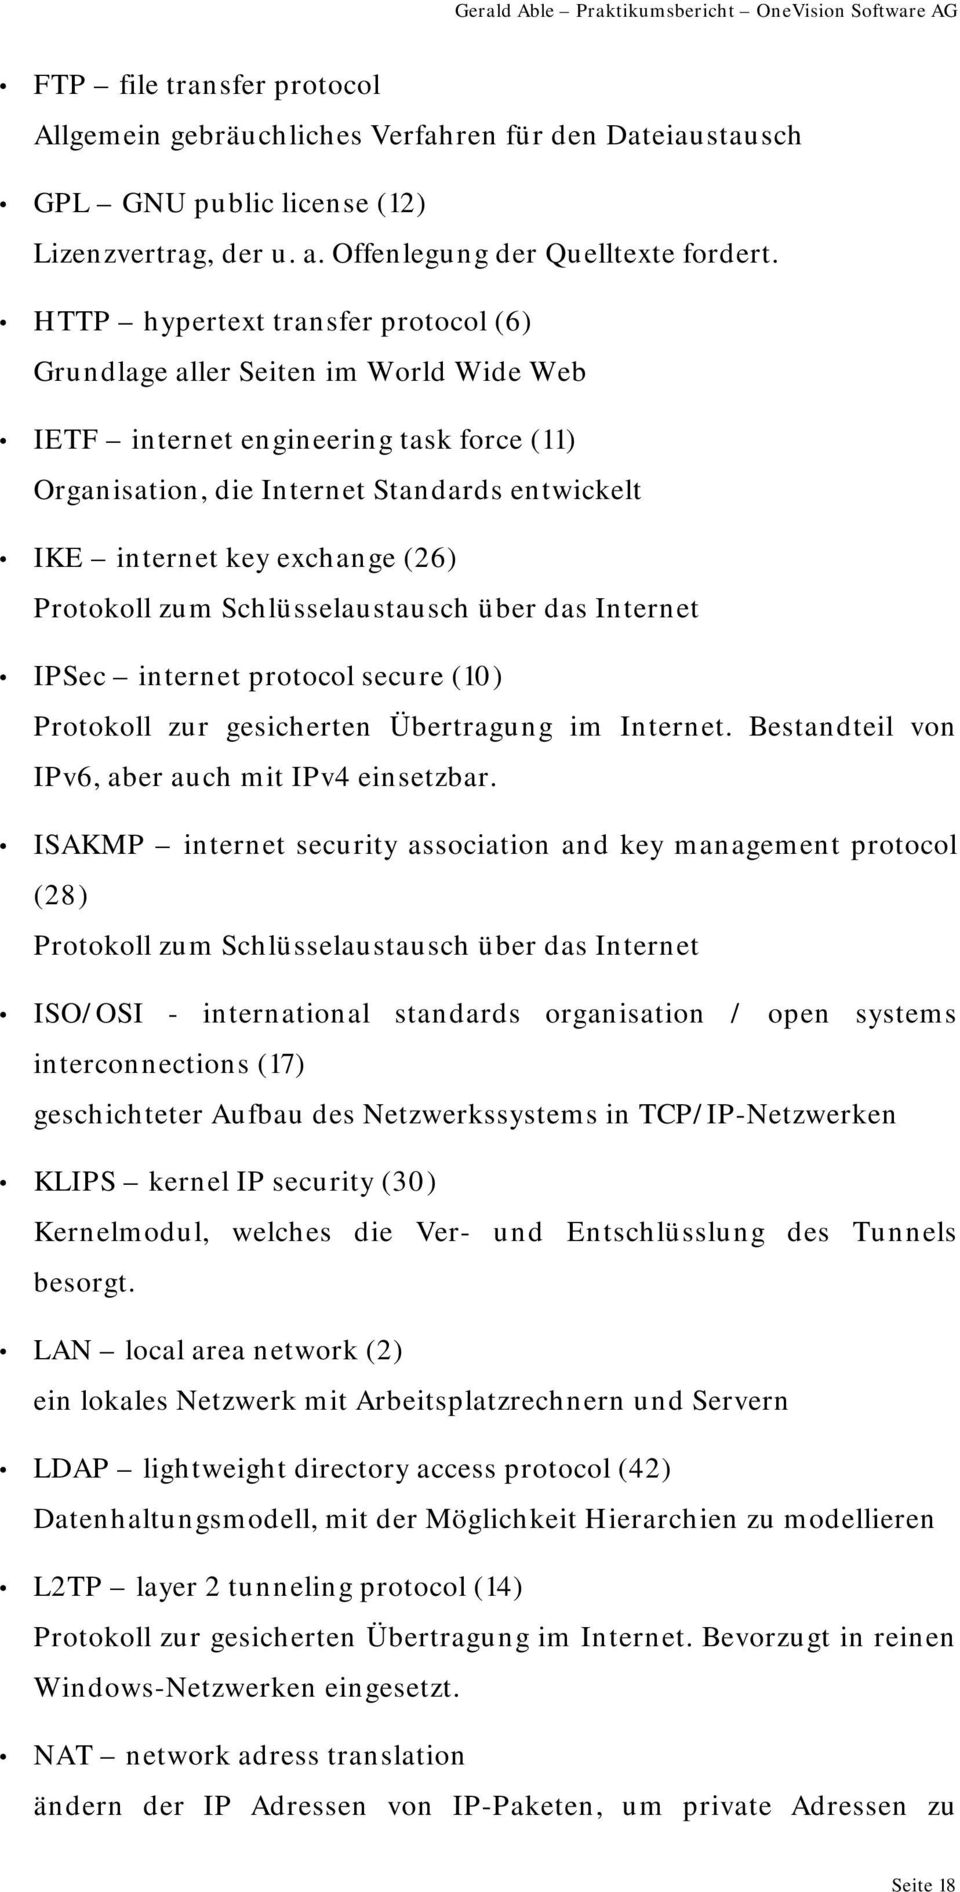 Protokoll zum Schlüsselaustausch über das Internet IPSec internet protocol secure (10) Protokoll zur gesicherten Übertragung im Internet. Bestandteil von IPv6, aber auch mit IPv4 einsetzbar.